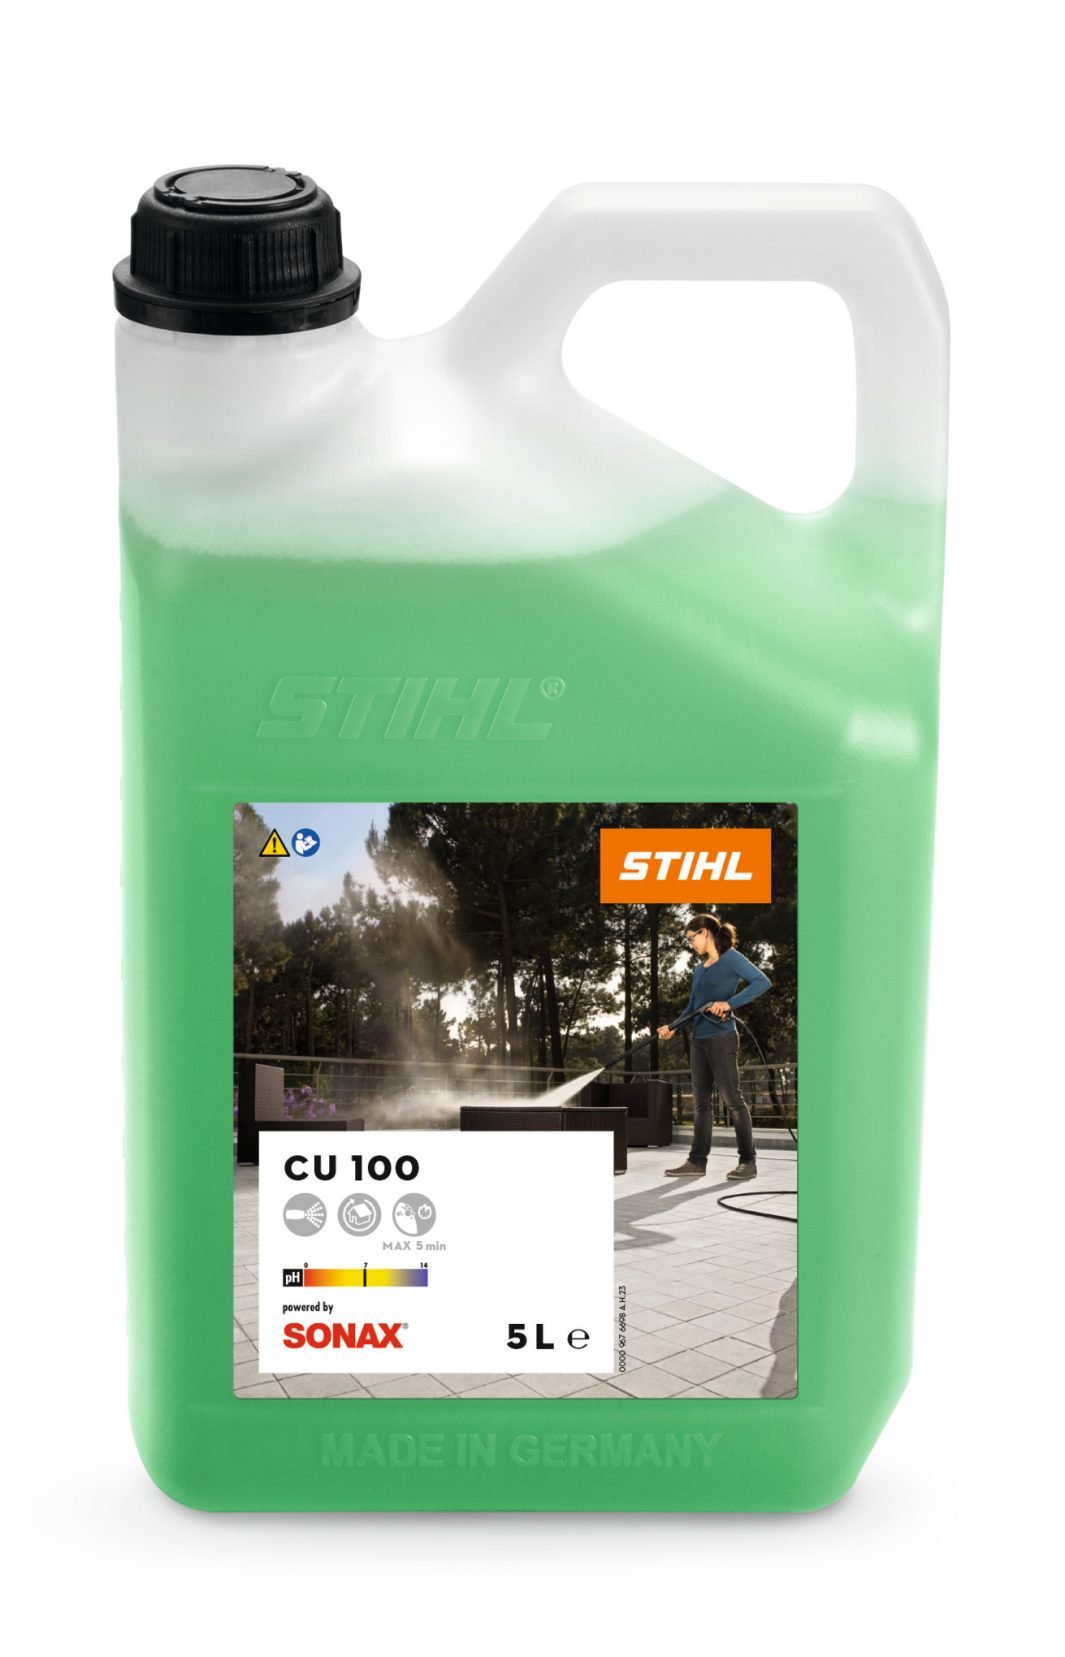 Stihl CU 100 Universal Cleaner